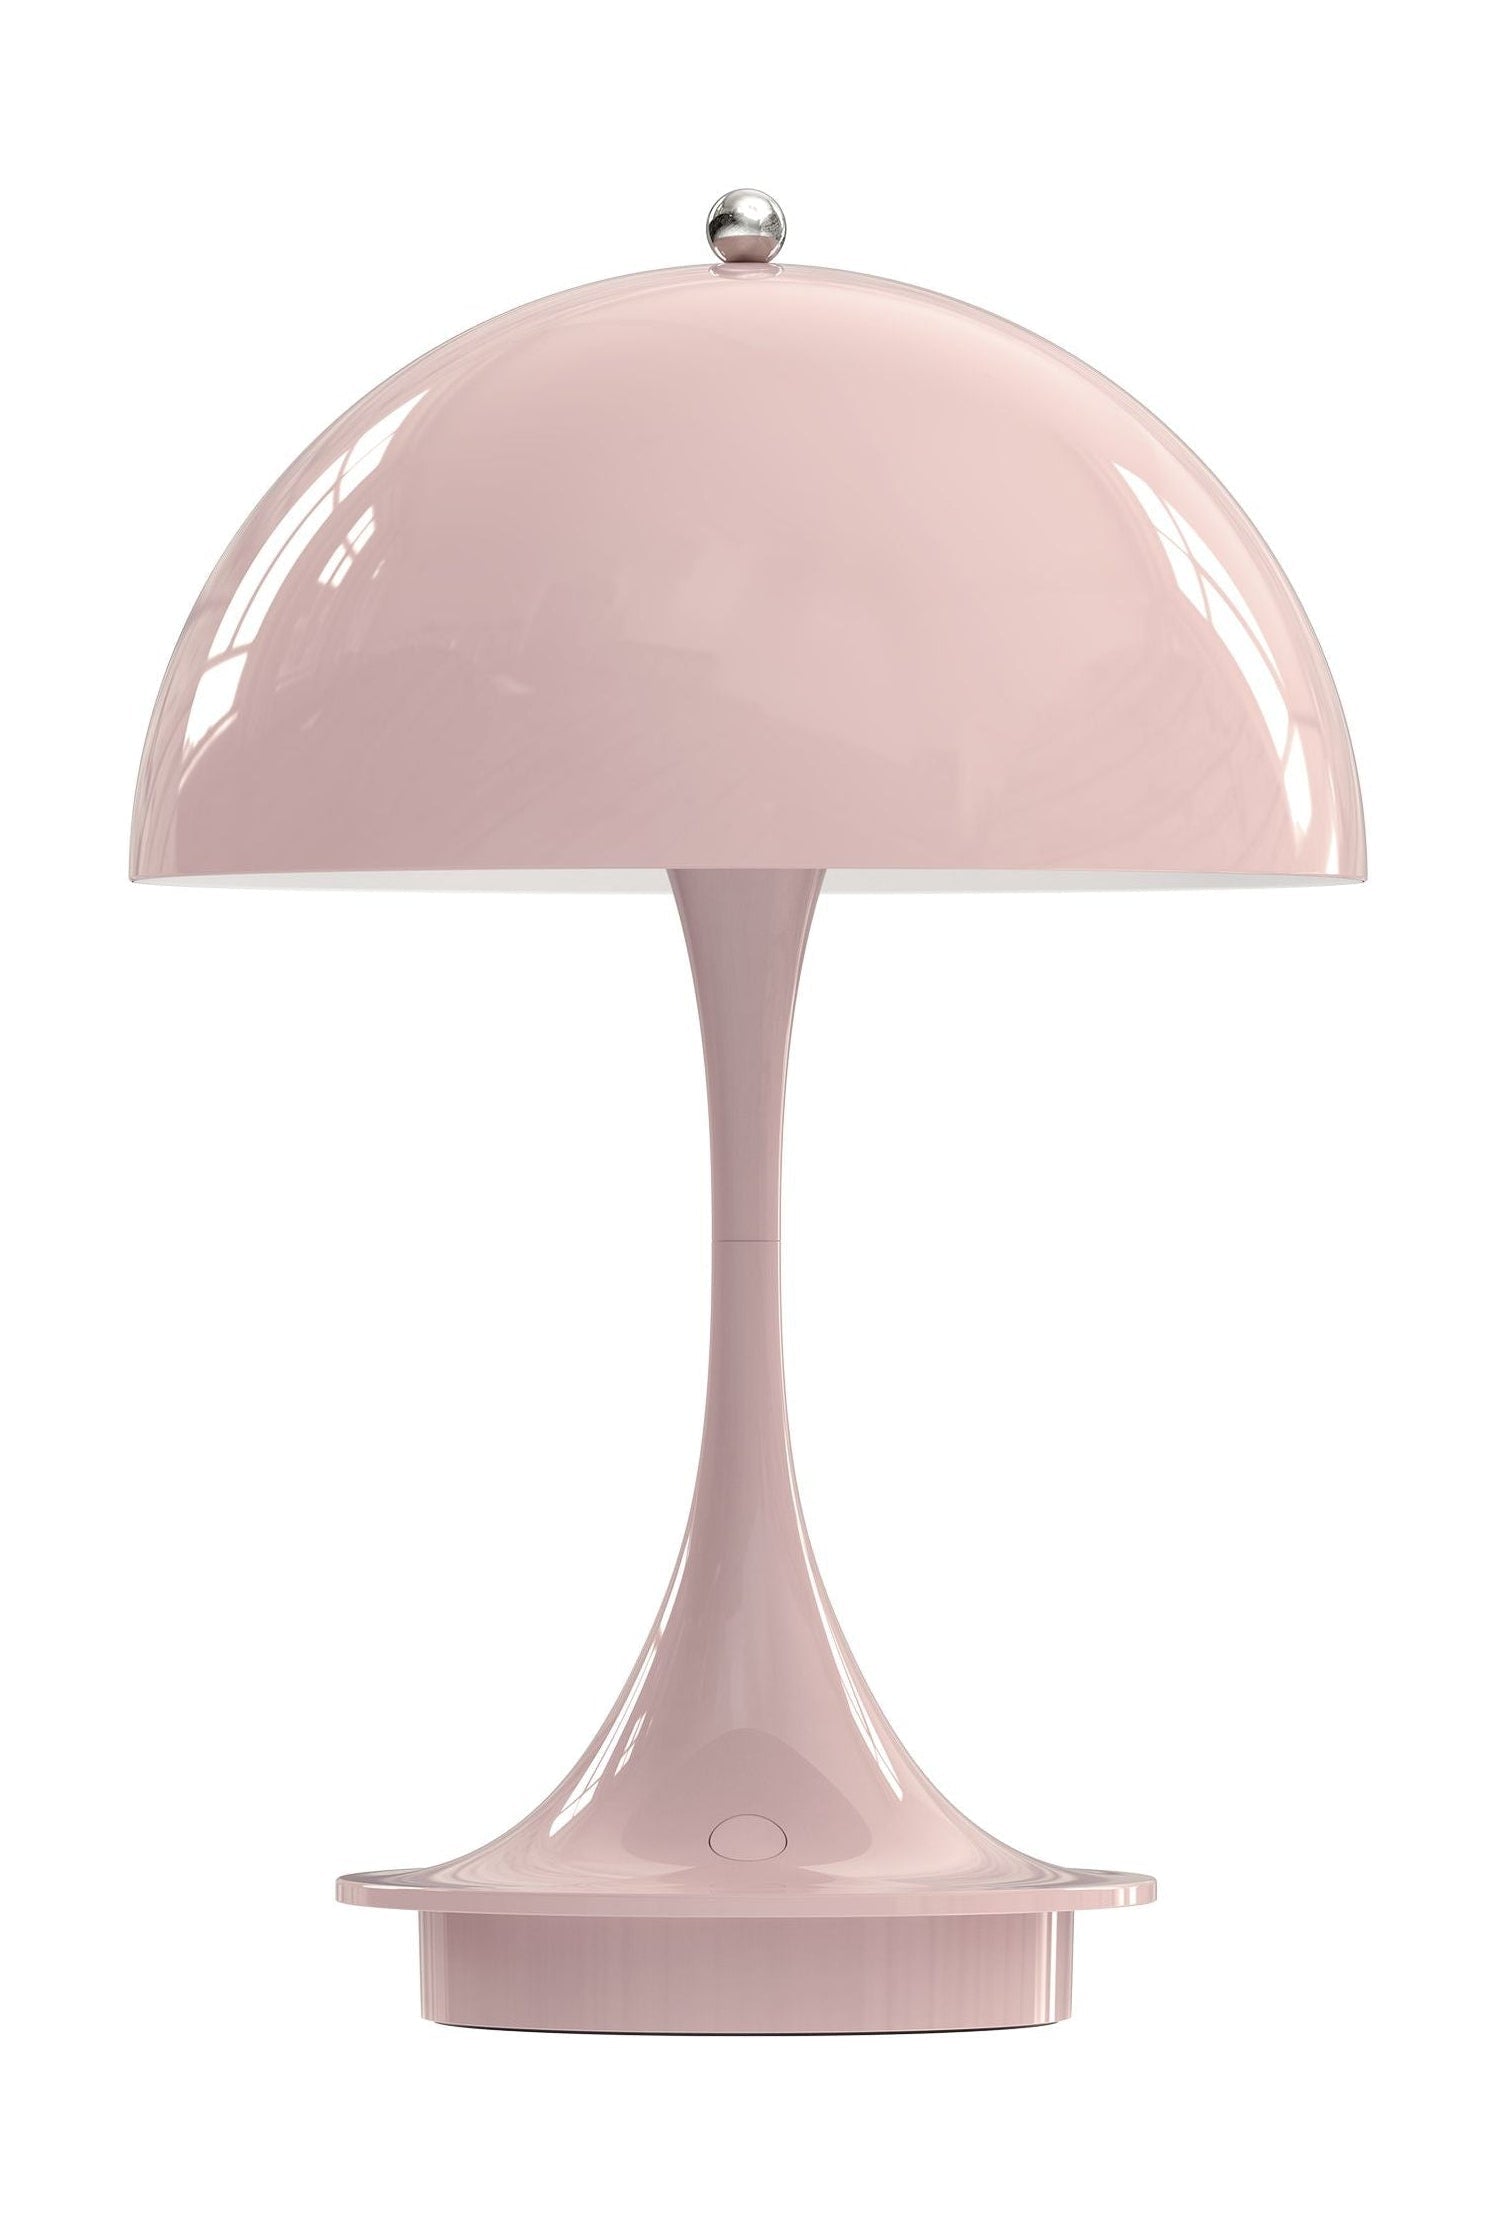 Louis Poulsen Panthella 160 Přenosná stolní lampa LED 27 K v2, bledá růže